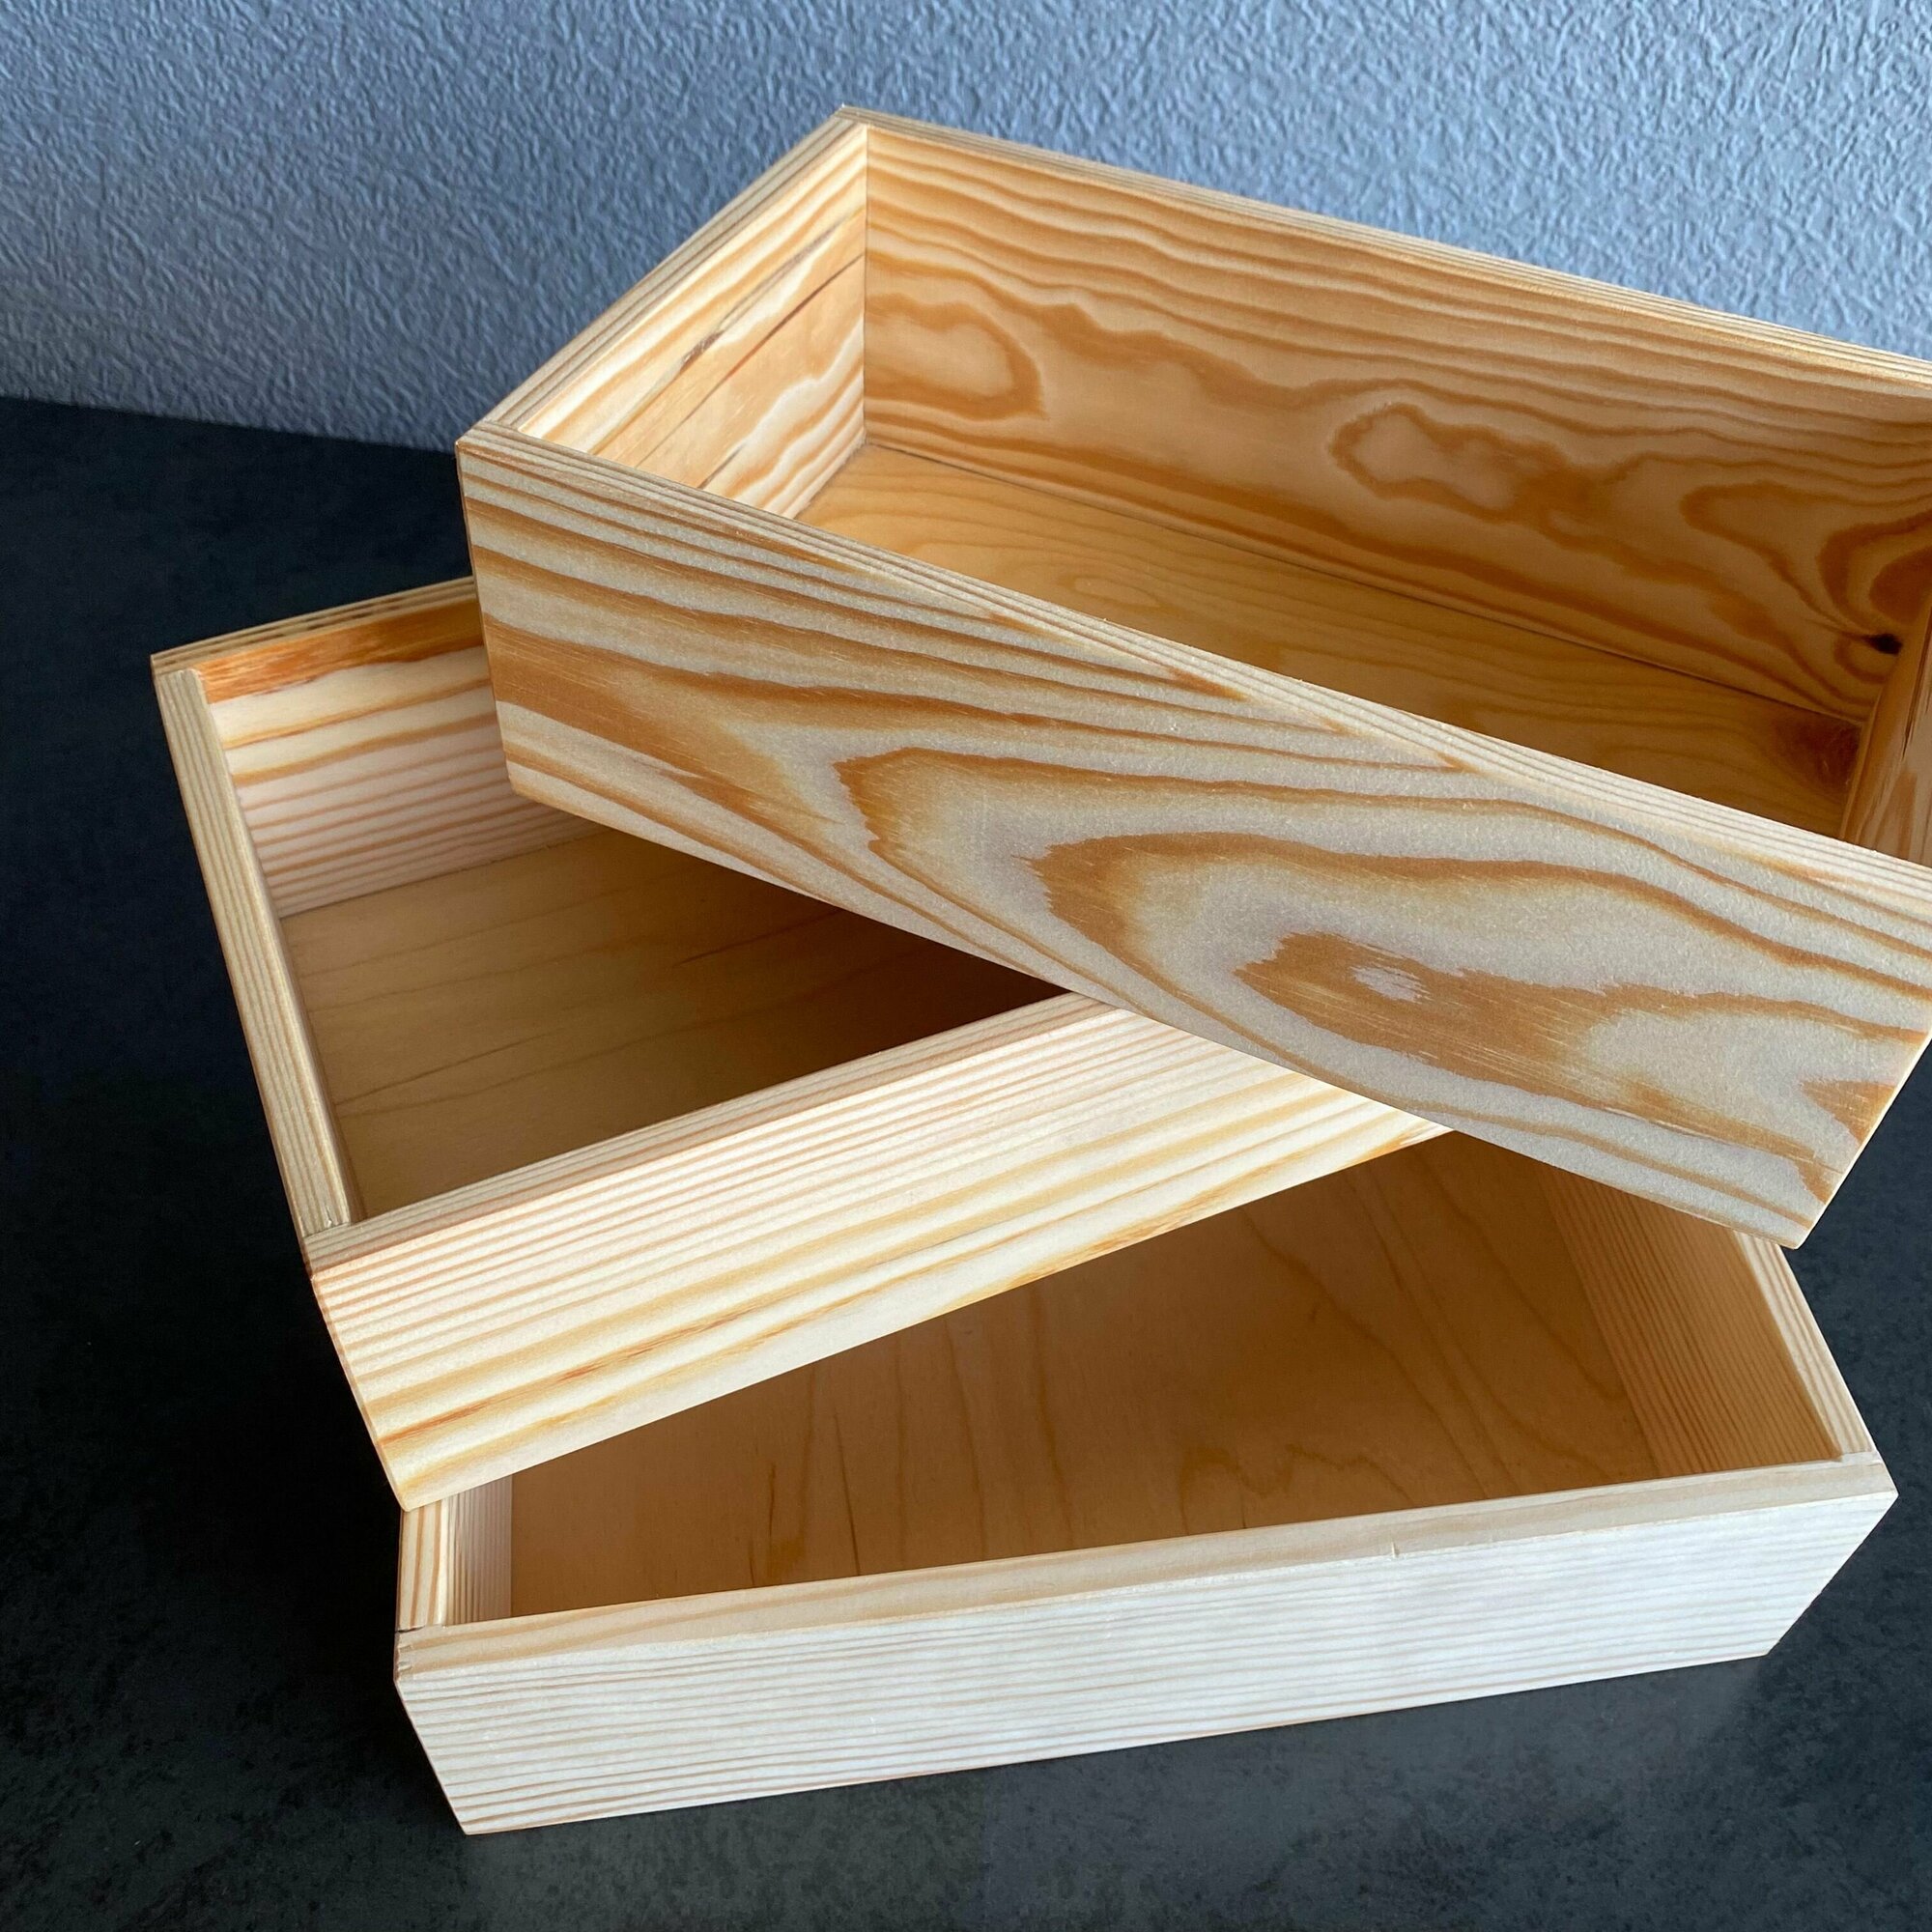 Ящик Размер S / Коробки для хранения / Боксы деревянные.